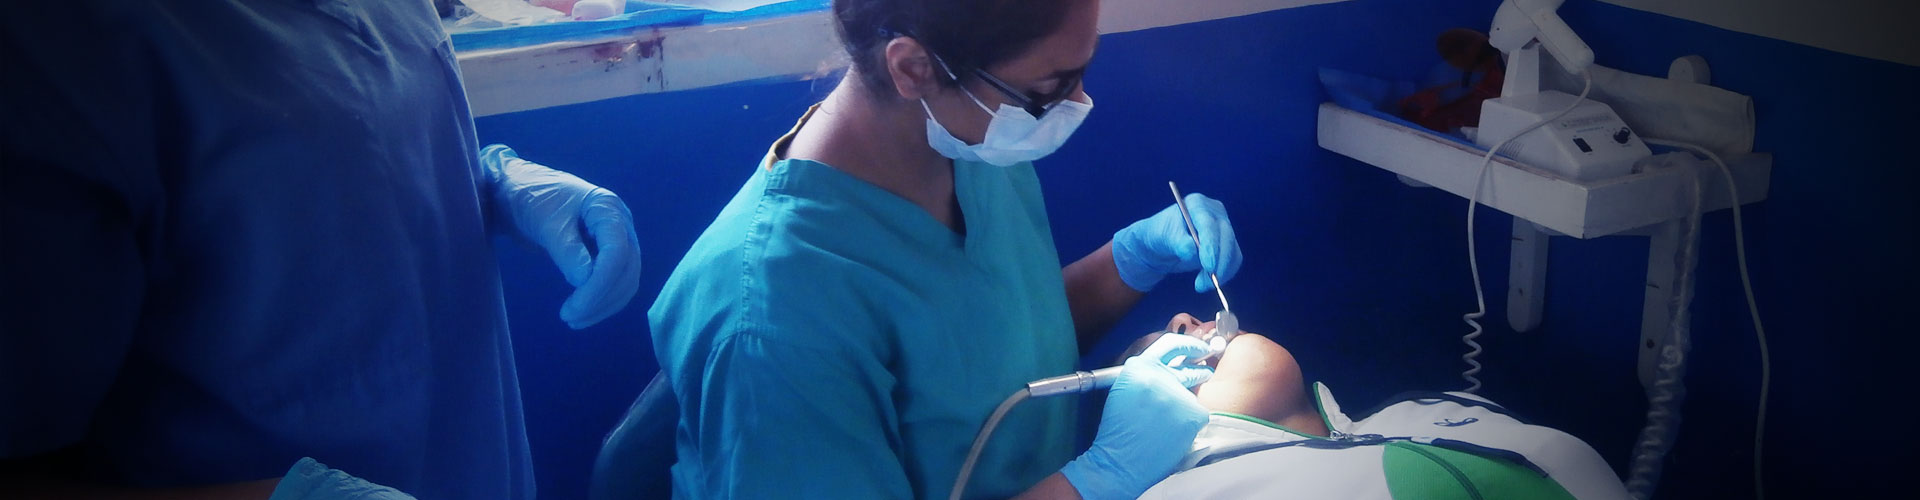 Pasantía Electiva Dental en Perú